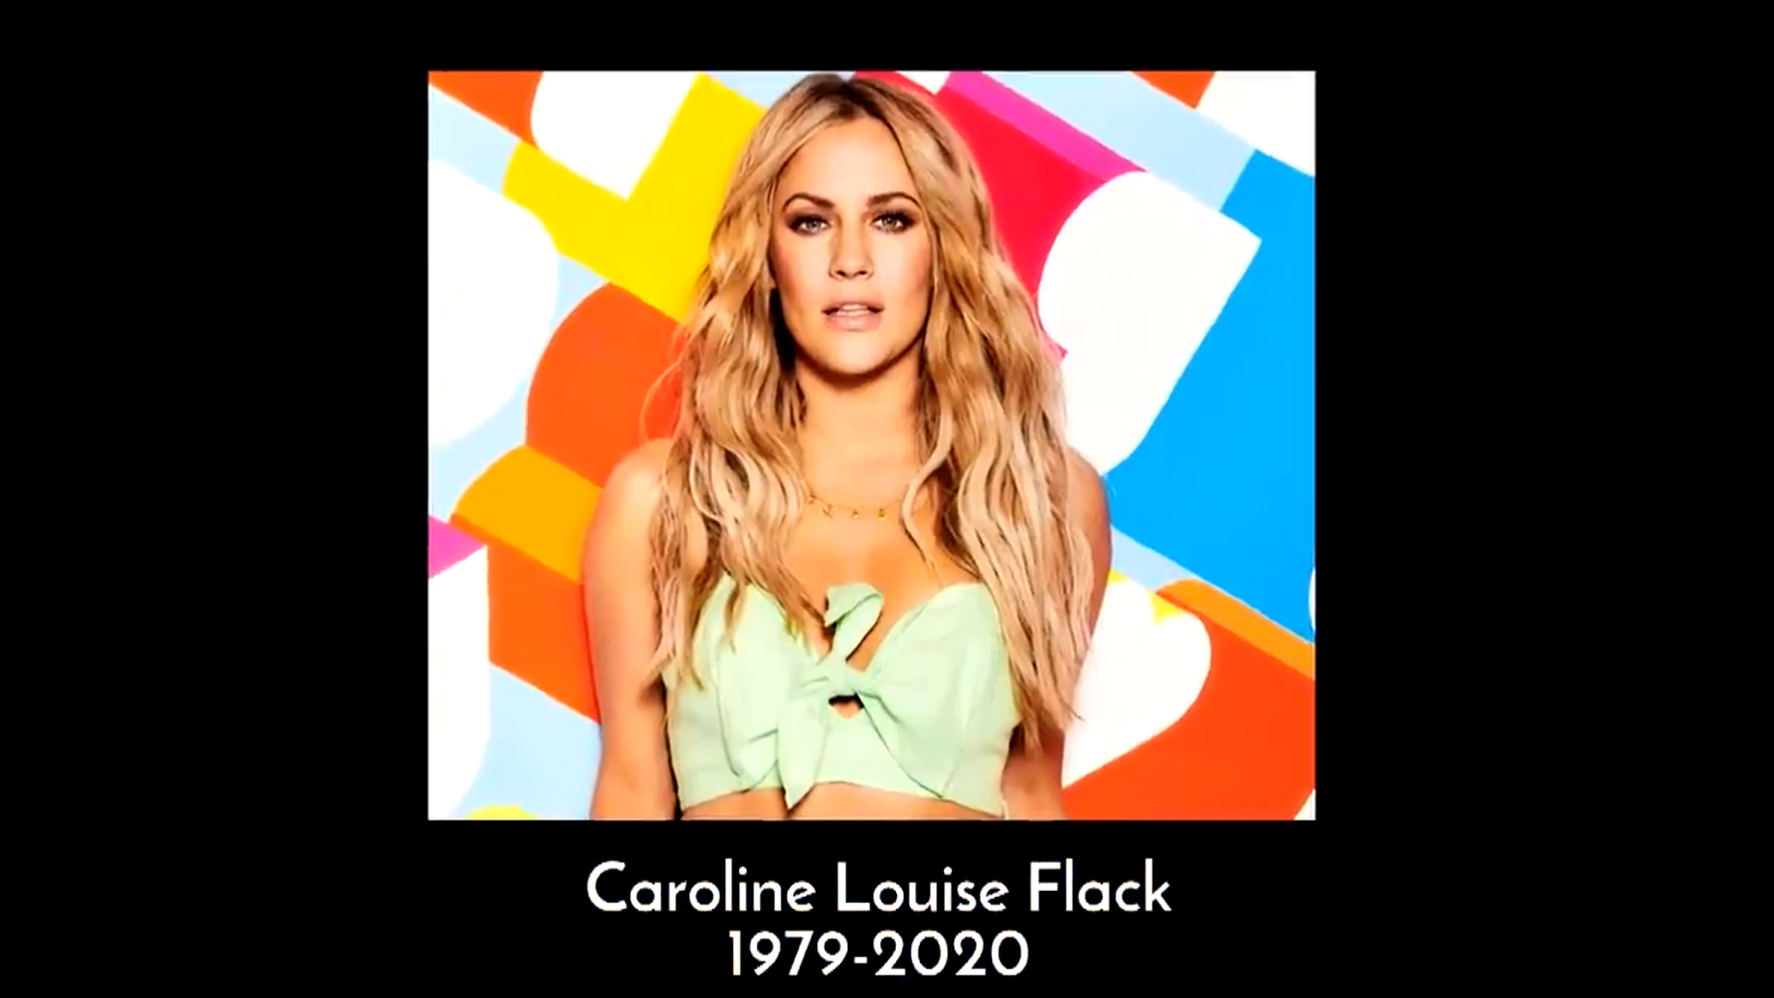 Caroline Flack